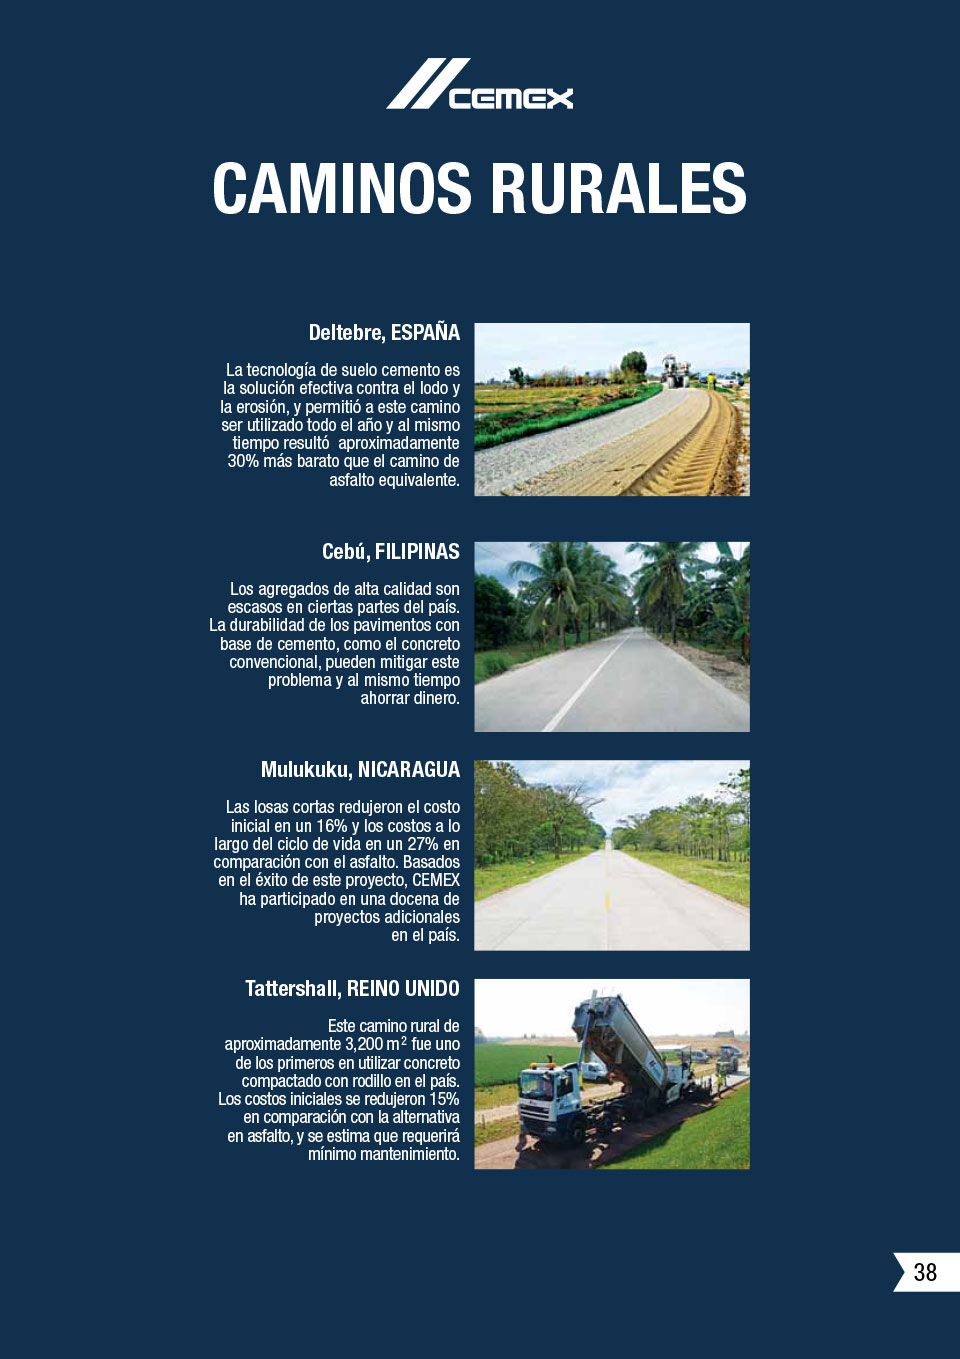 la imagen muestra algunos caminos rurales que CEMEX ha ayudado a construir